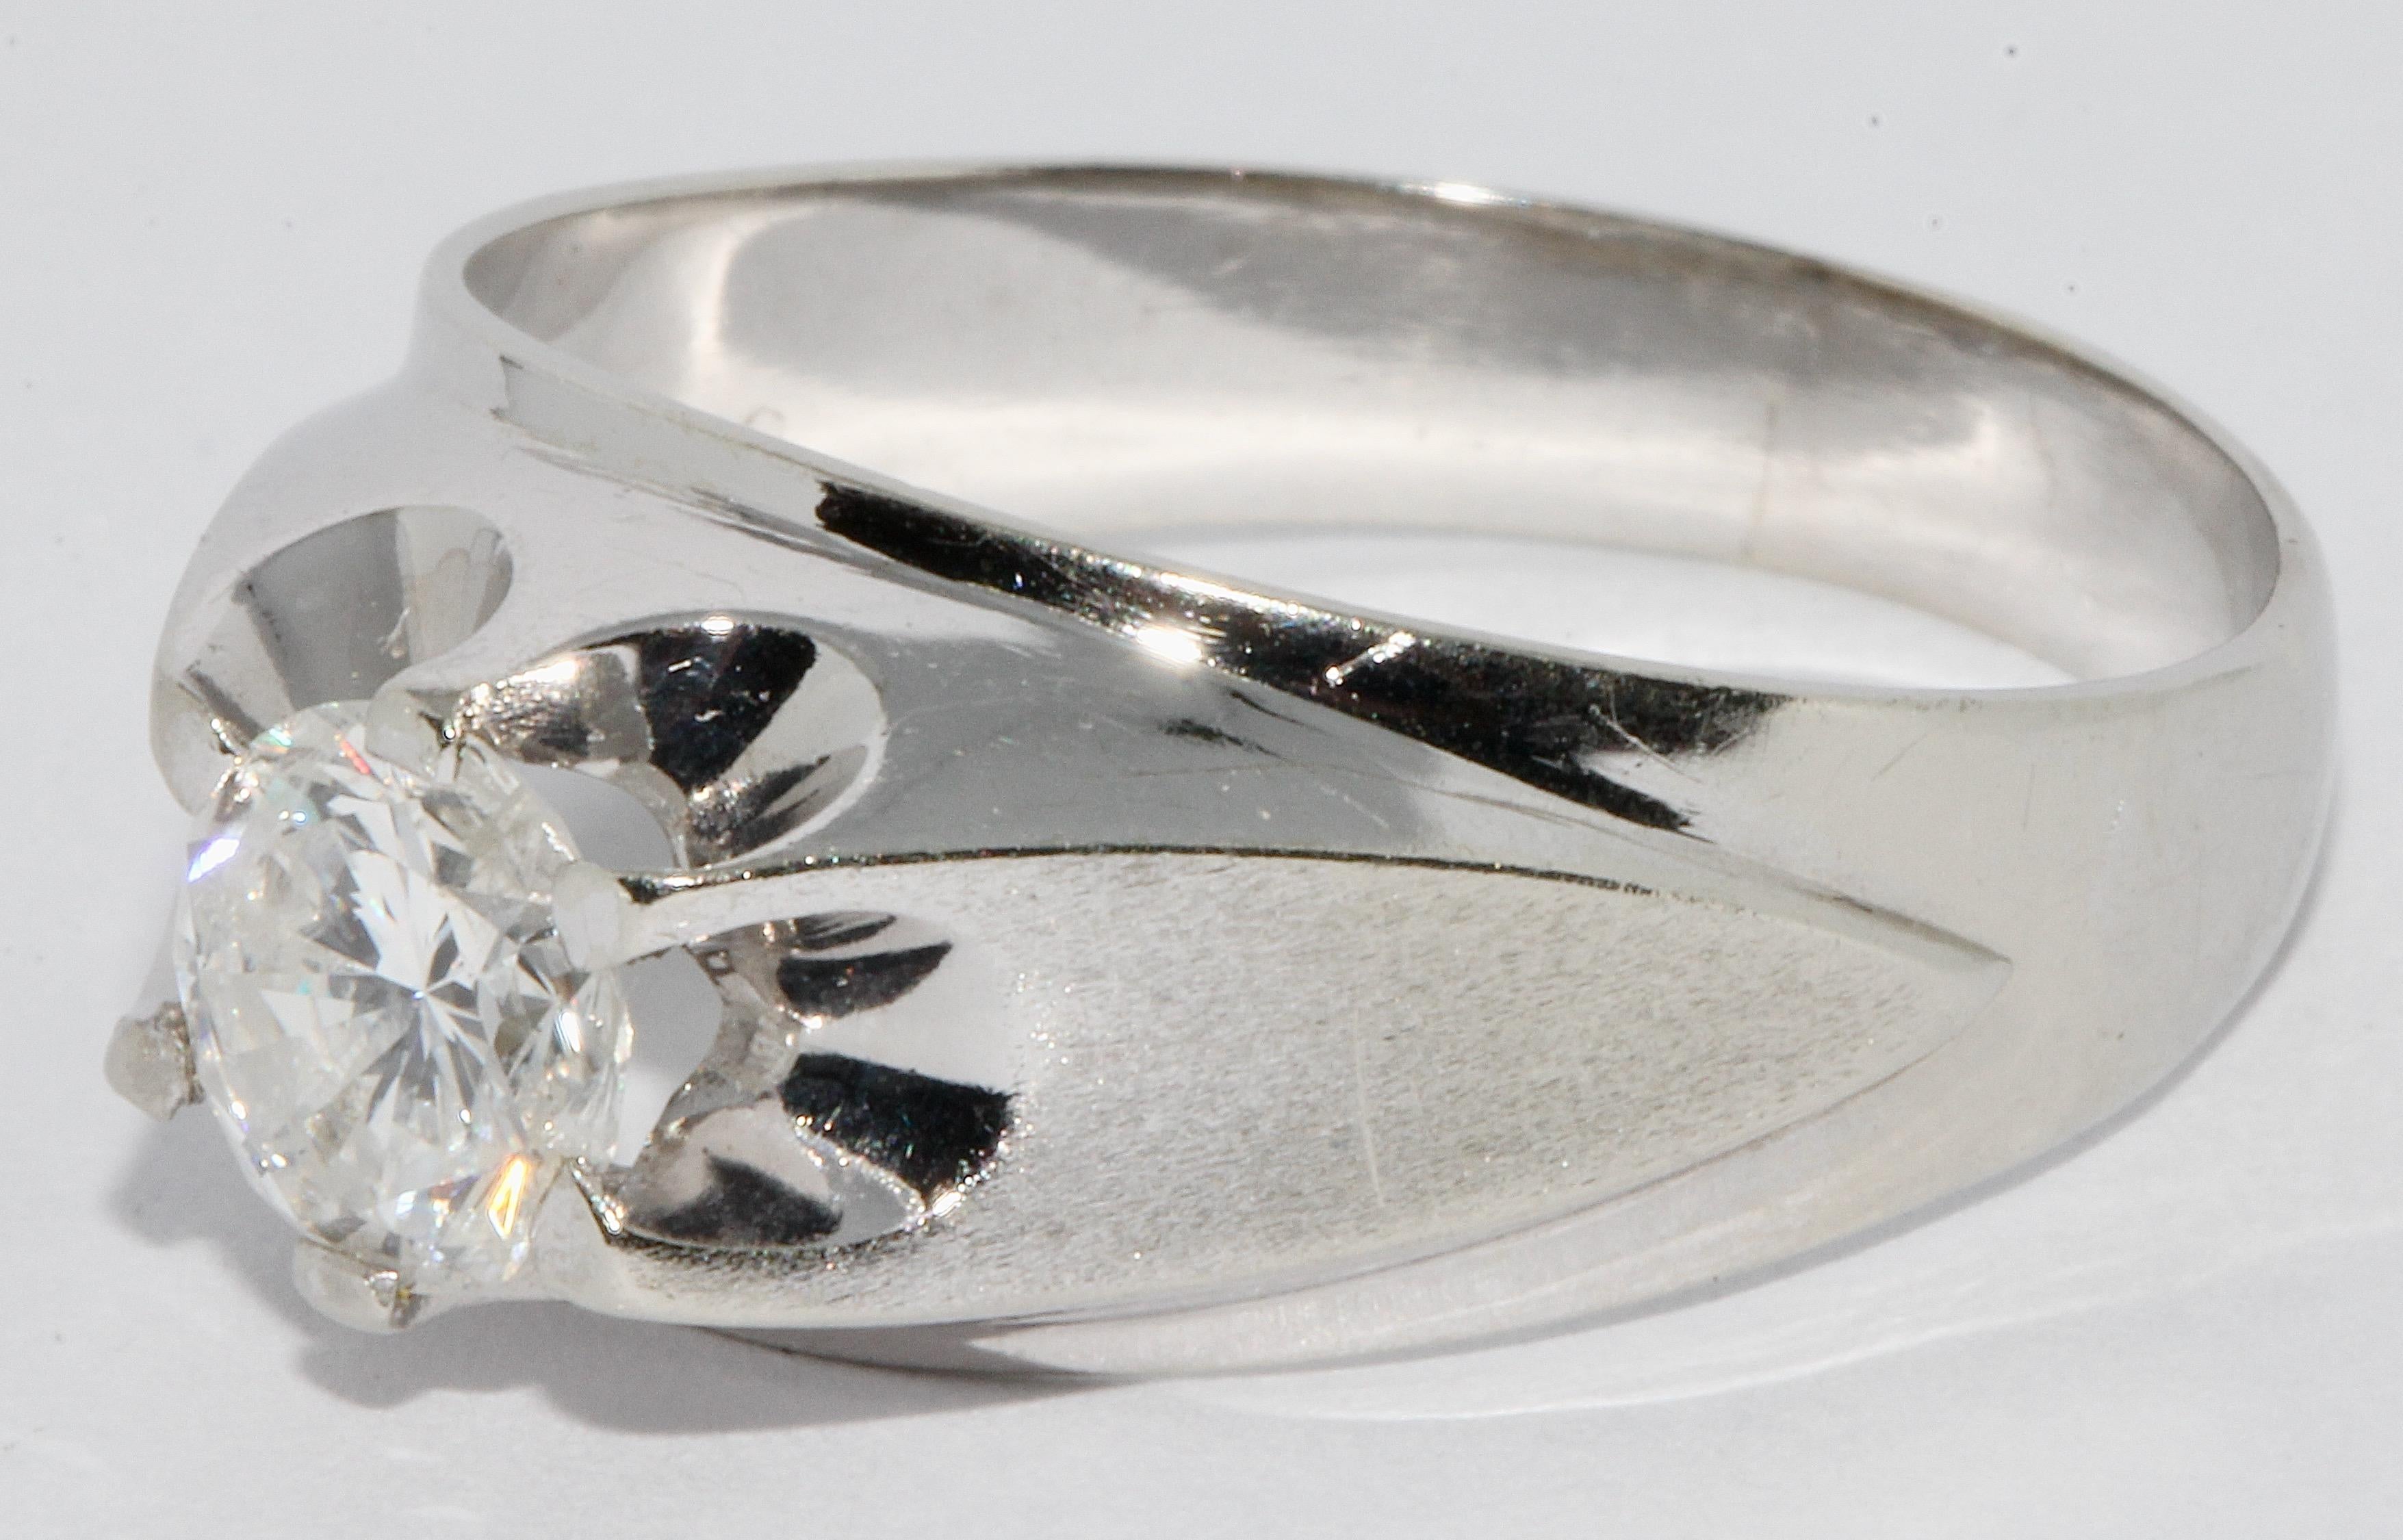 Bague en or blanc avec diamant solitaire de 1,1 carat.

Couleur G
Clarté SI3
Coupe très bonne.

Certificat d'authenticité inclus.

Nous pouvons ajuster la taille de l'anneau sur demande.